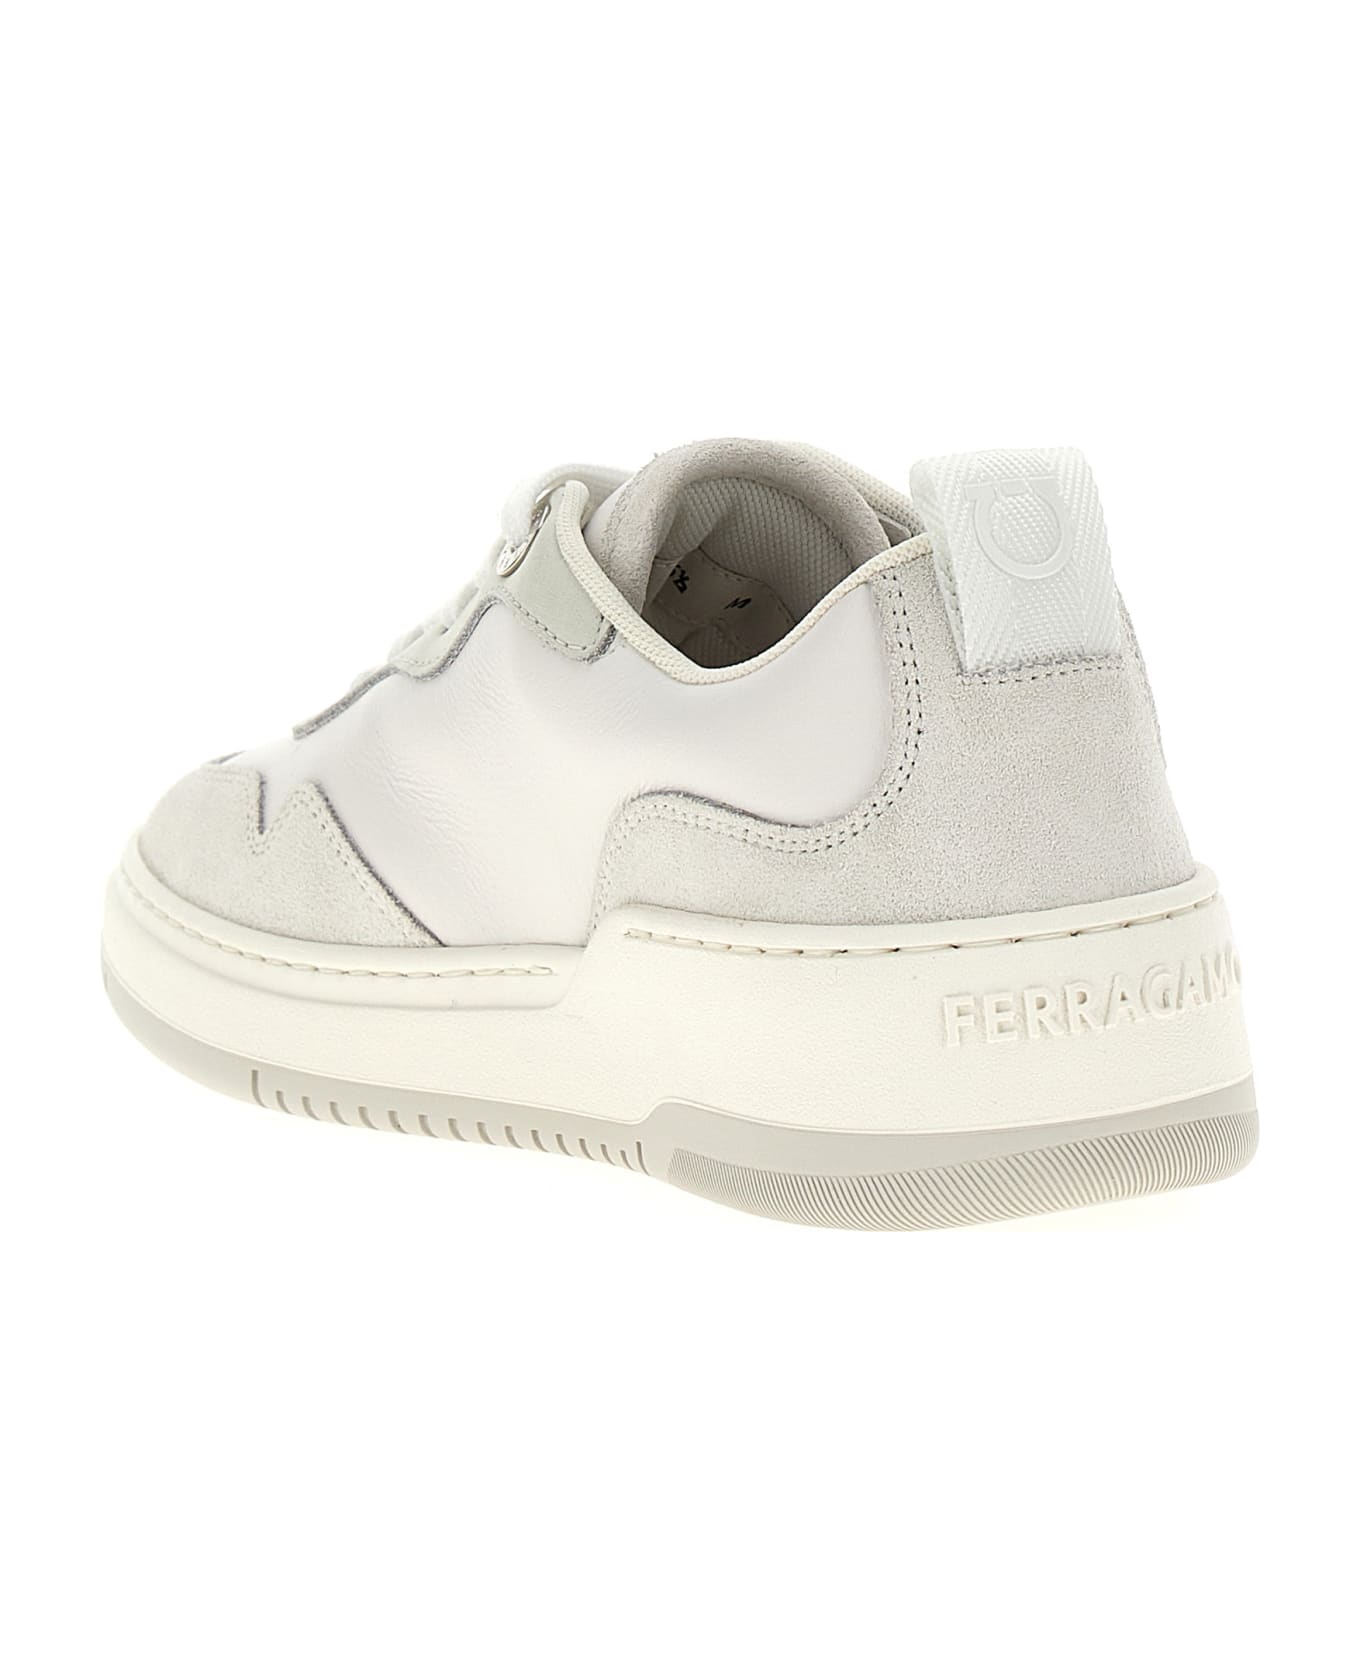 Ferragamo 'dania' Sneakers - White